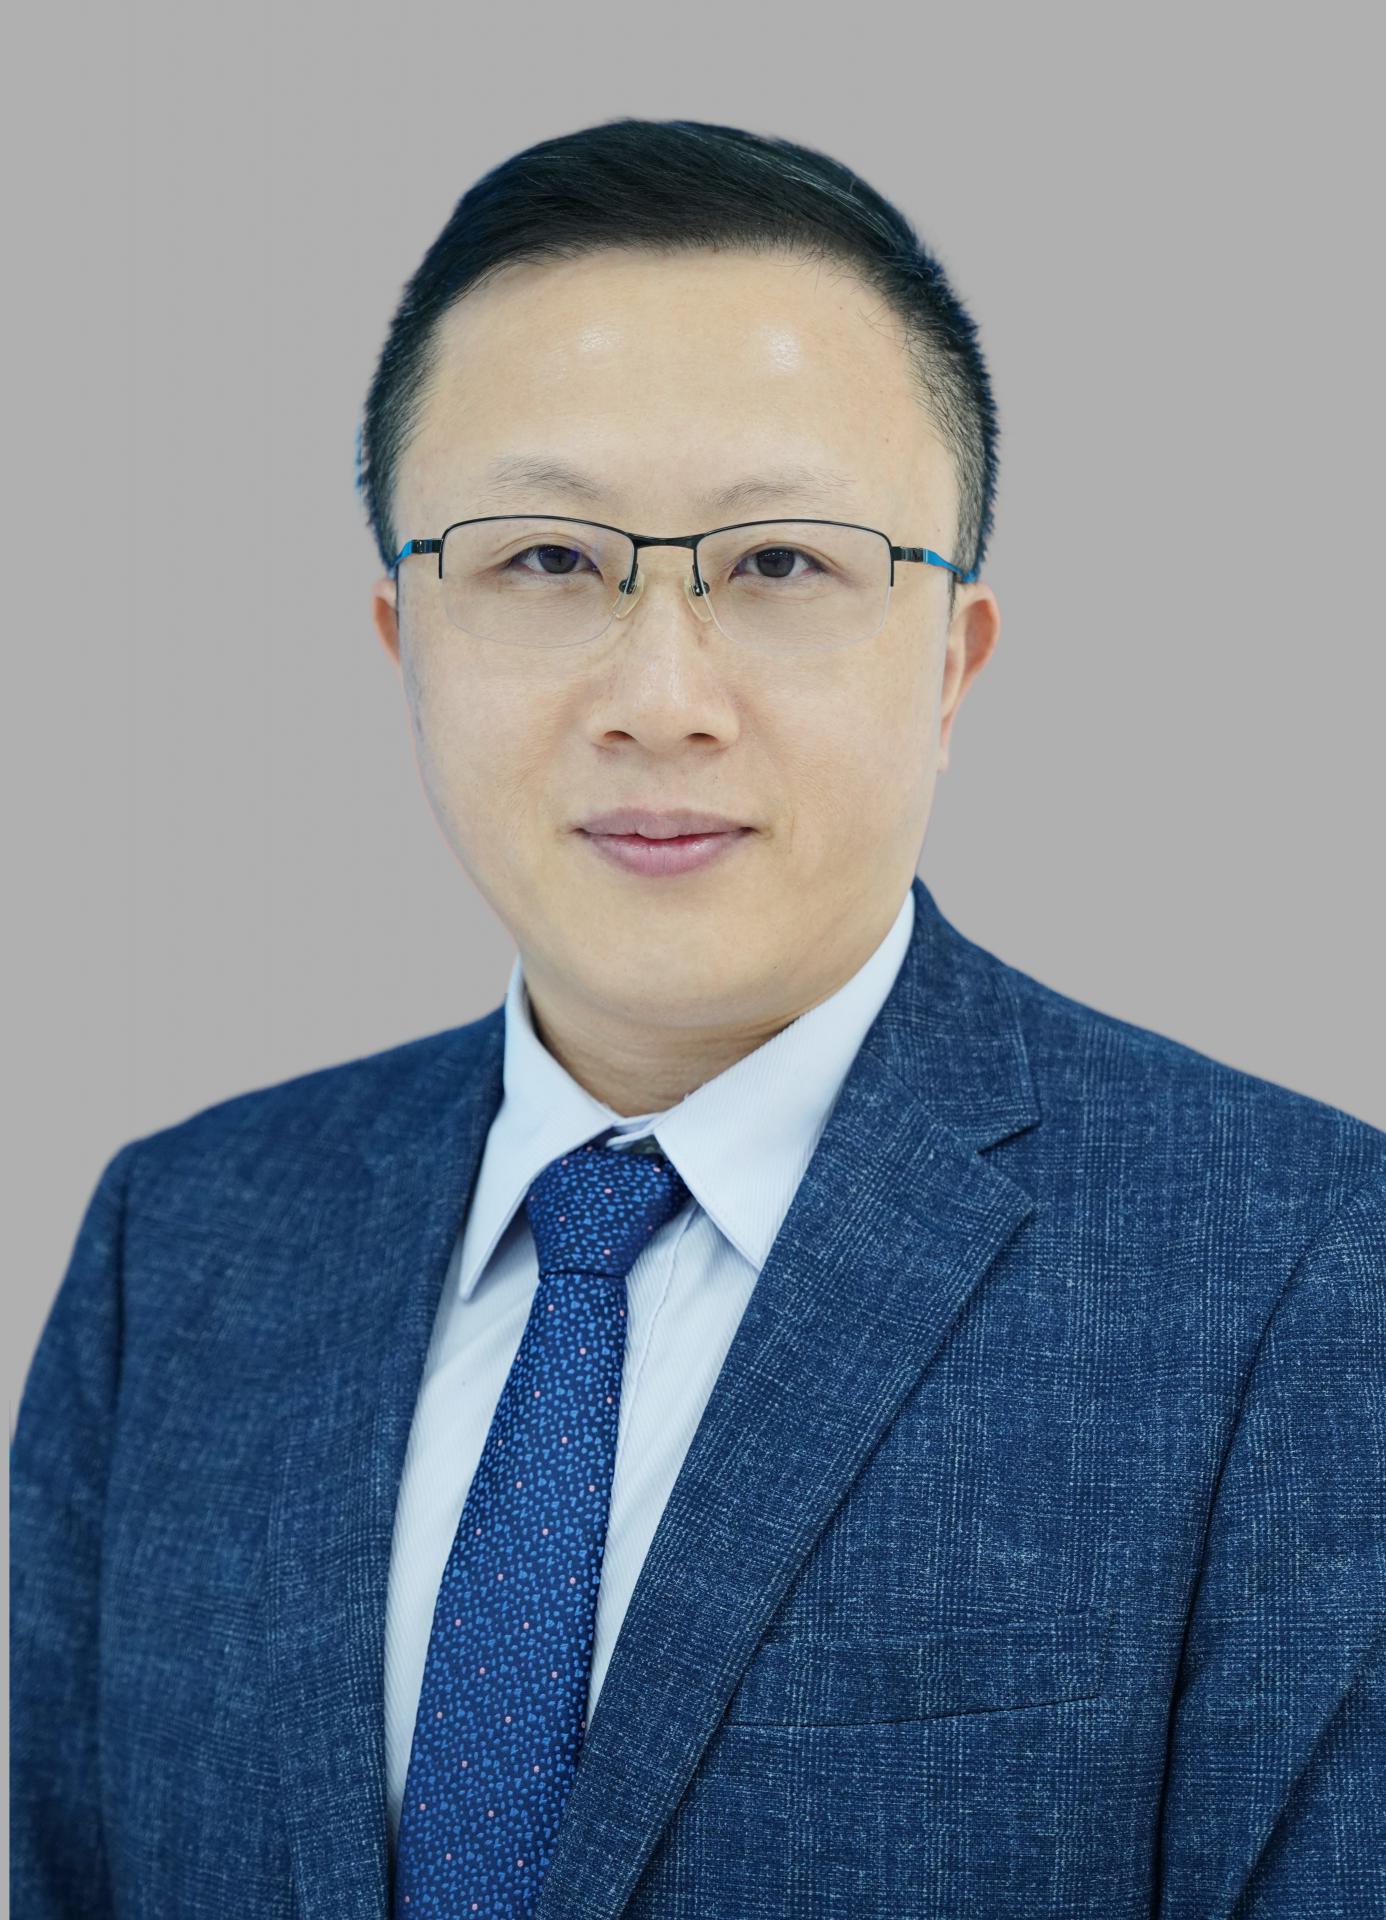 Dr. Qin Dajiang